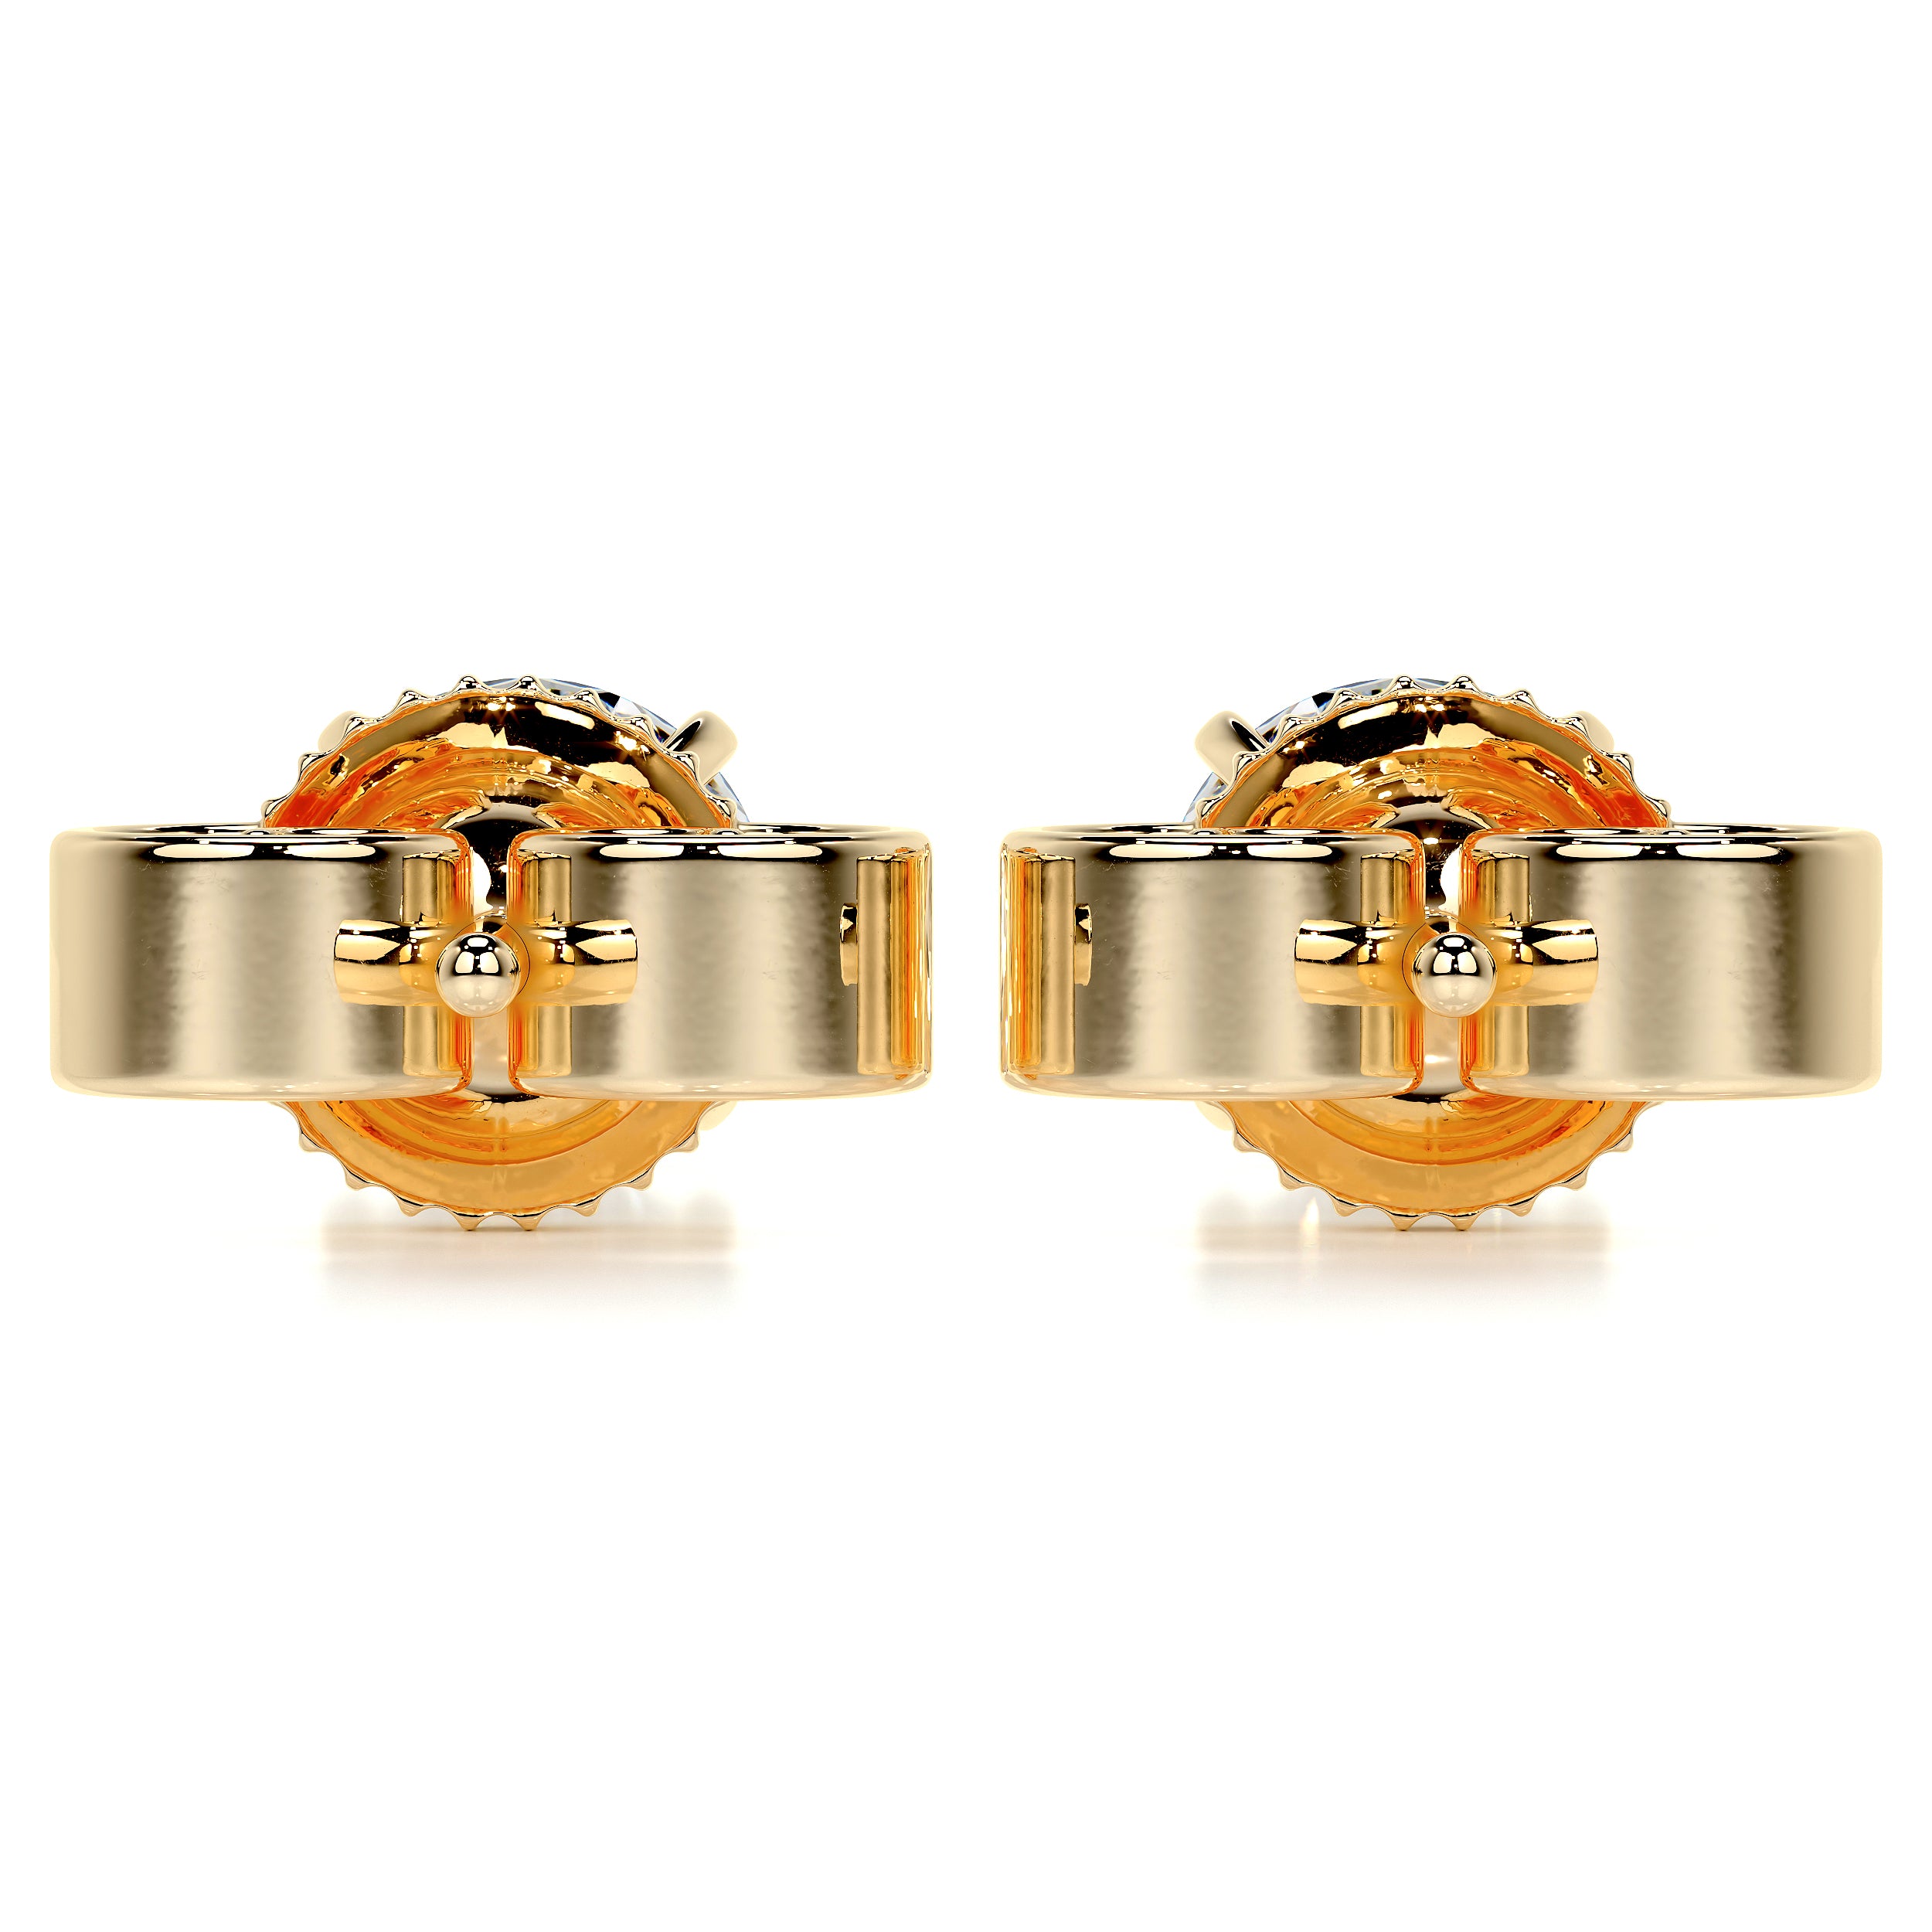 Allen Diamond Earrings -18K Yellow Gold